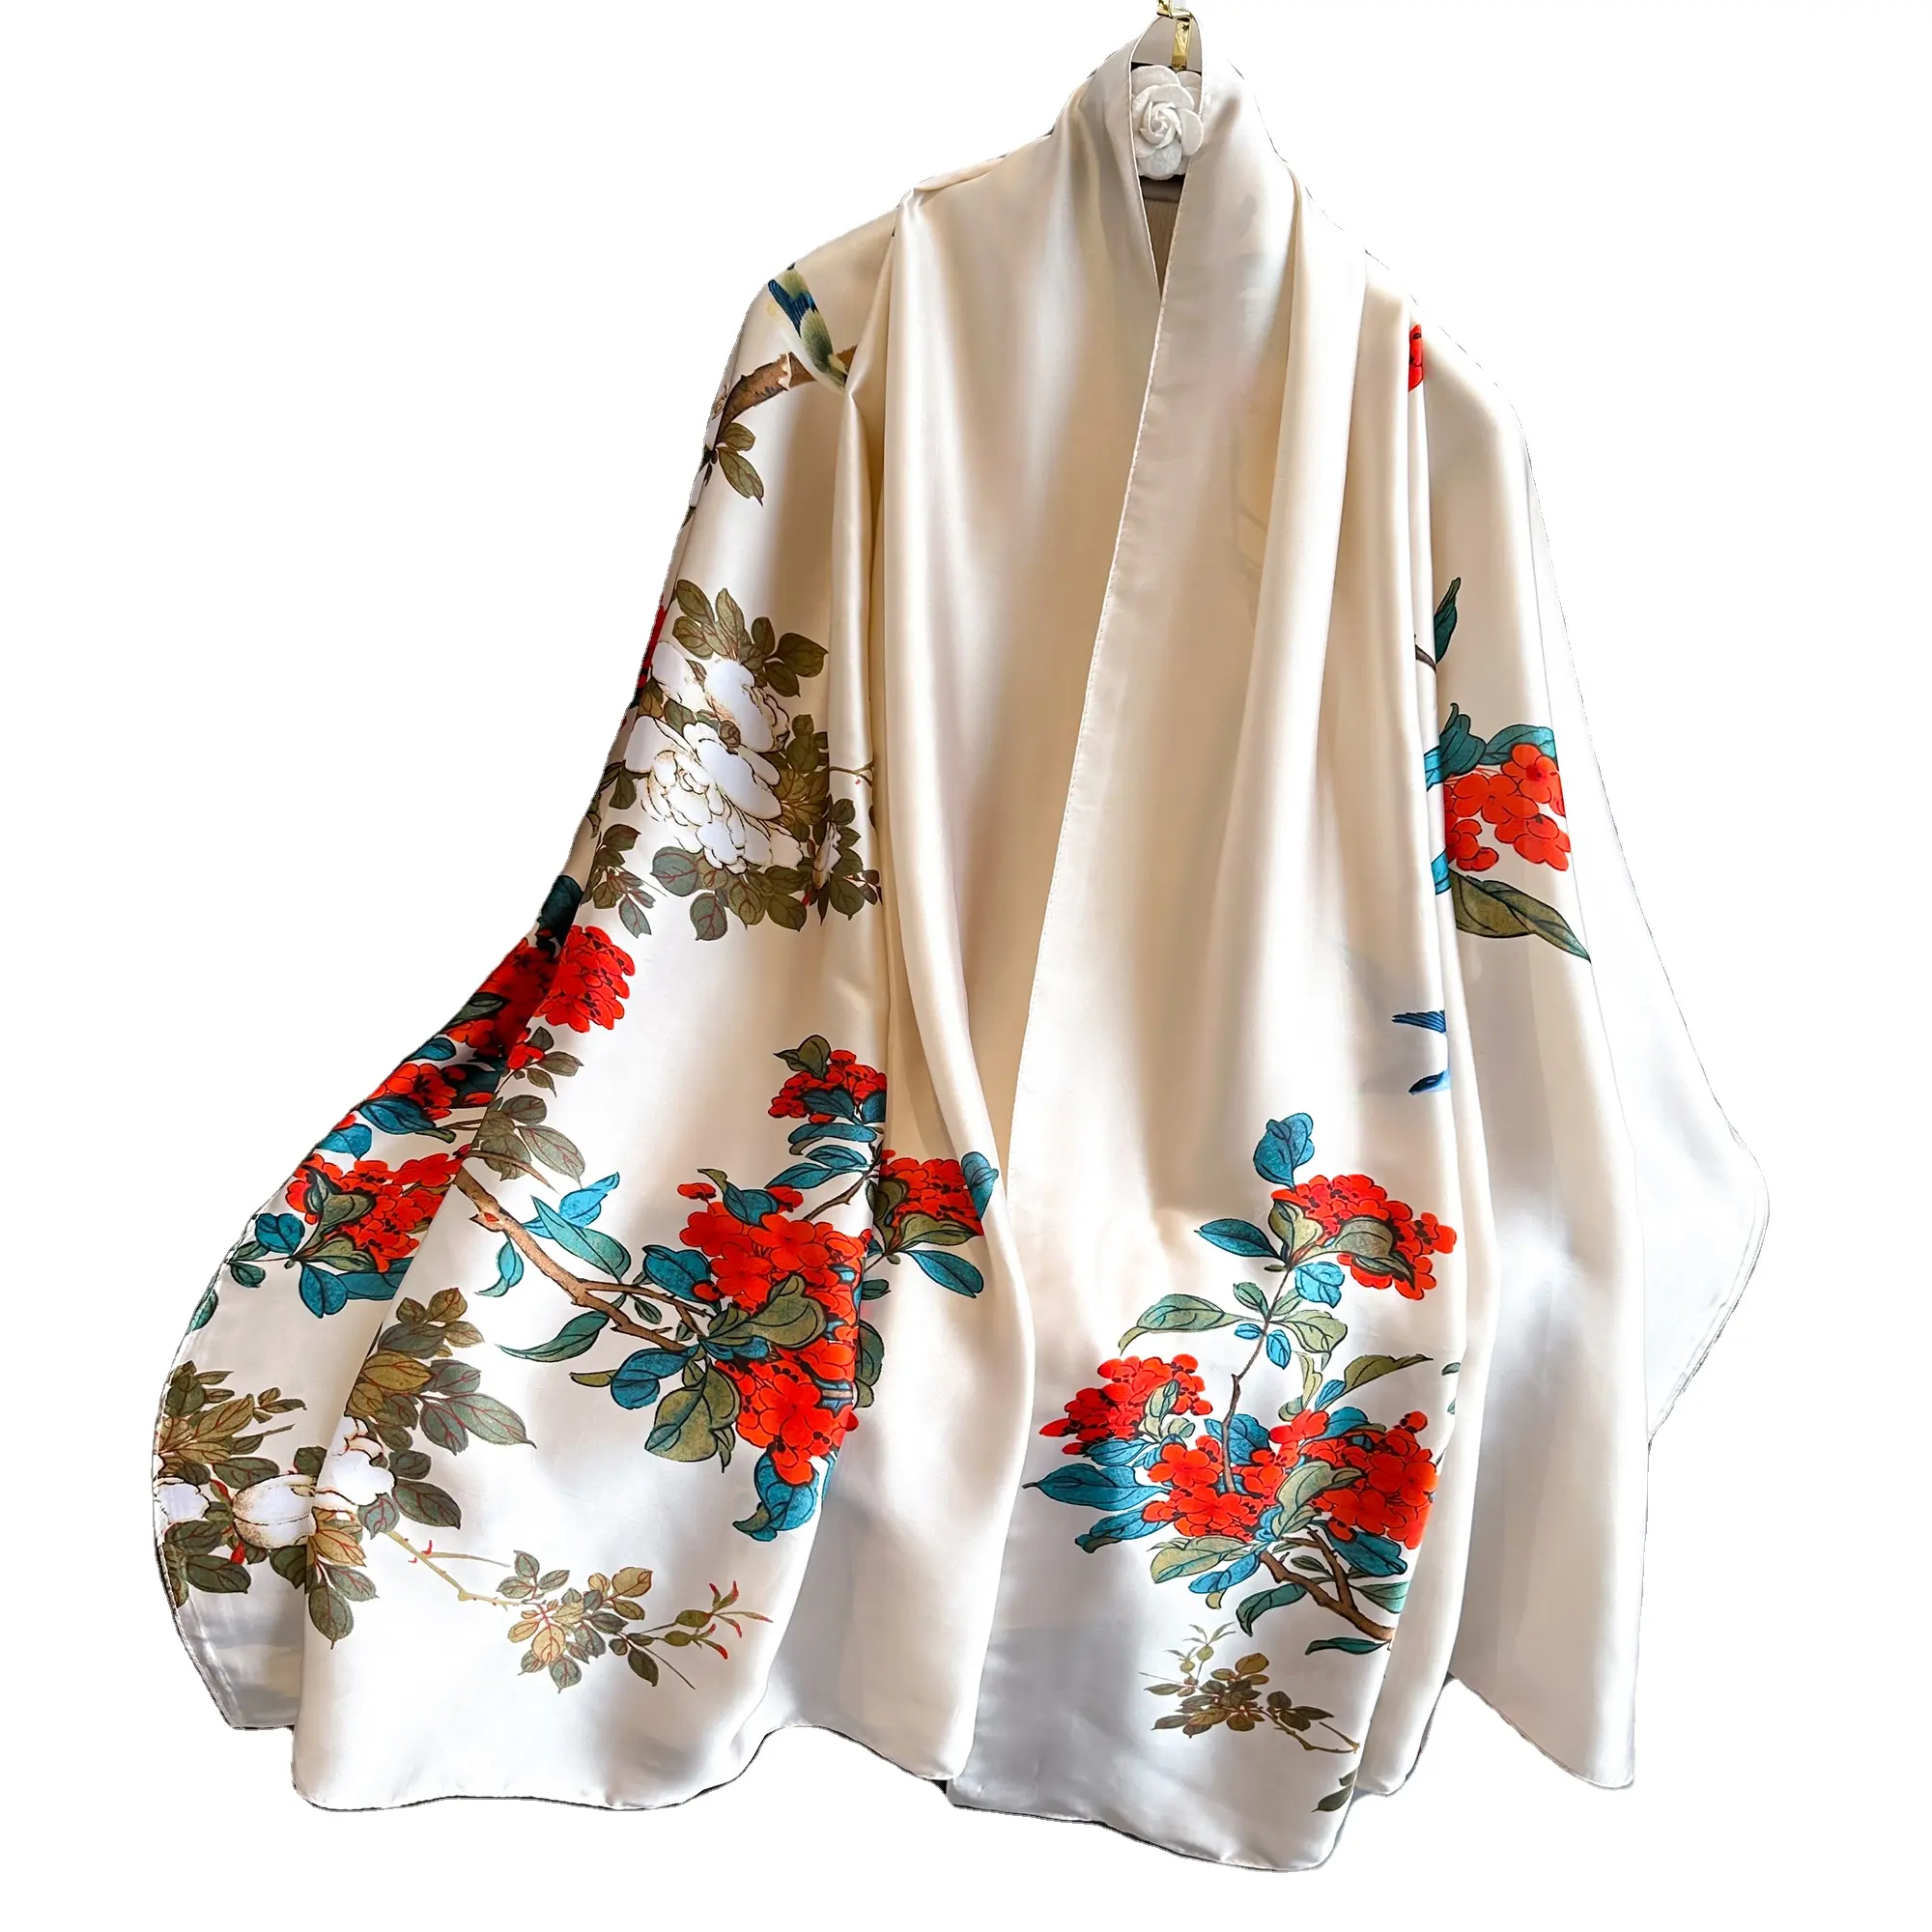 Vente en gros de nouvelle arrivage de logo personnalisé, impression numérique, écharpe florale nationale de Chine élégante sensation soie pour femmes